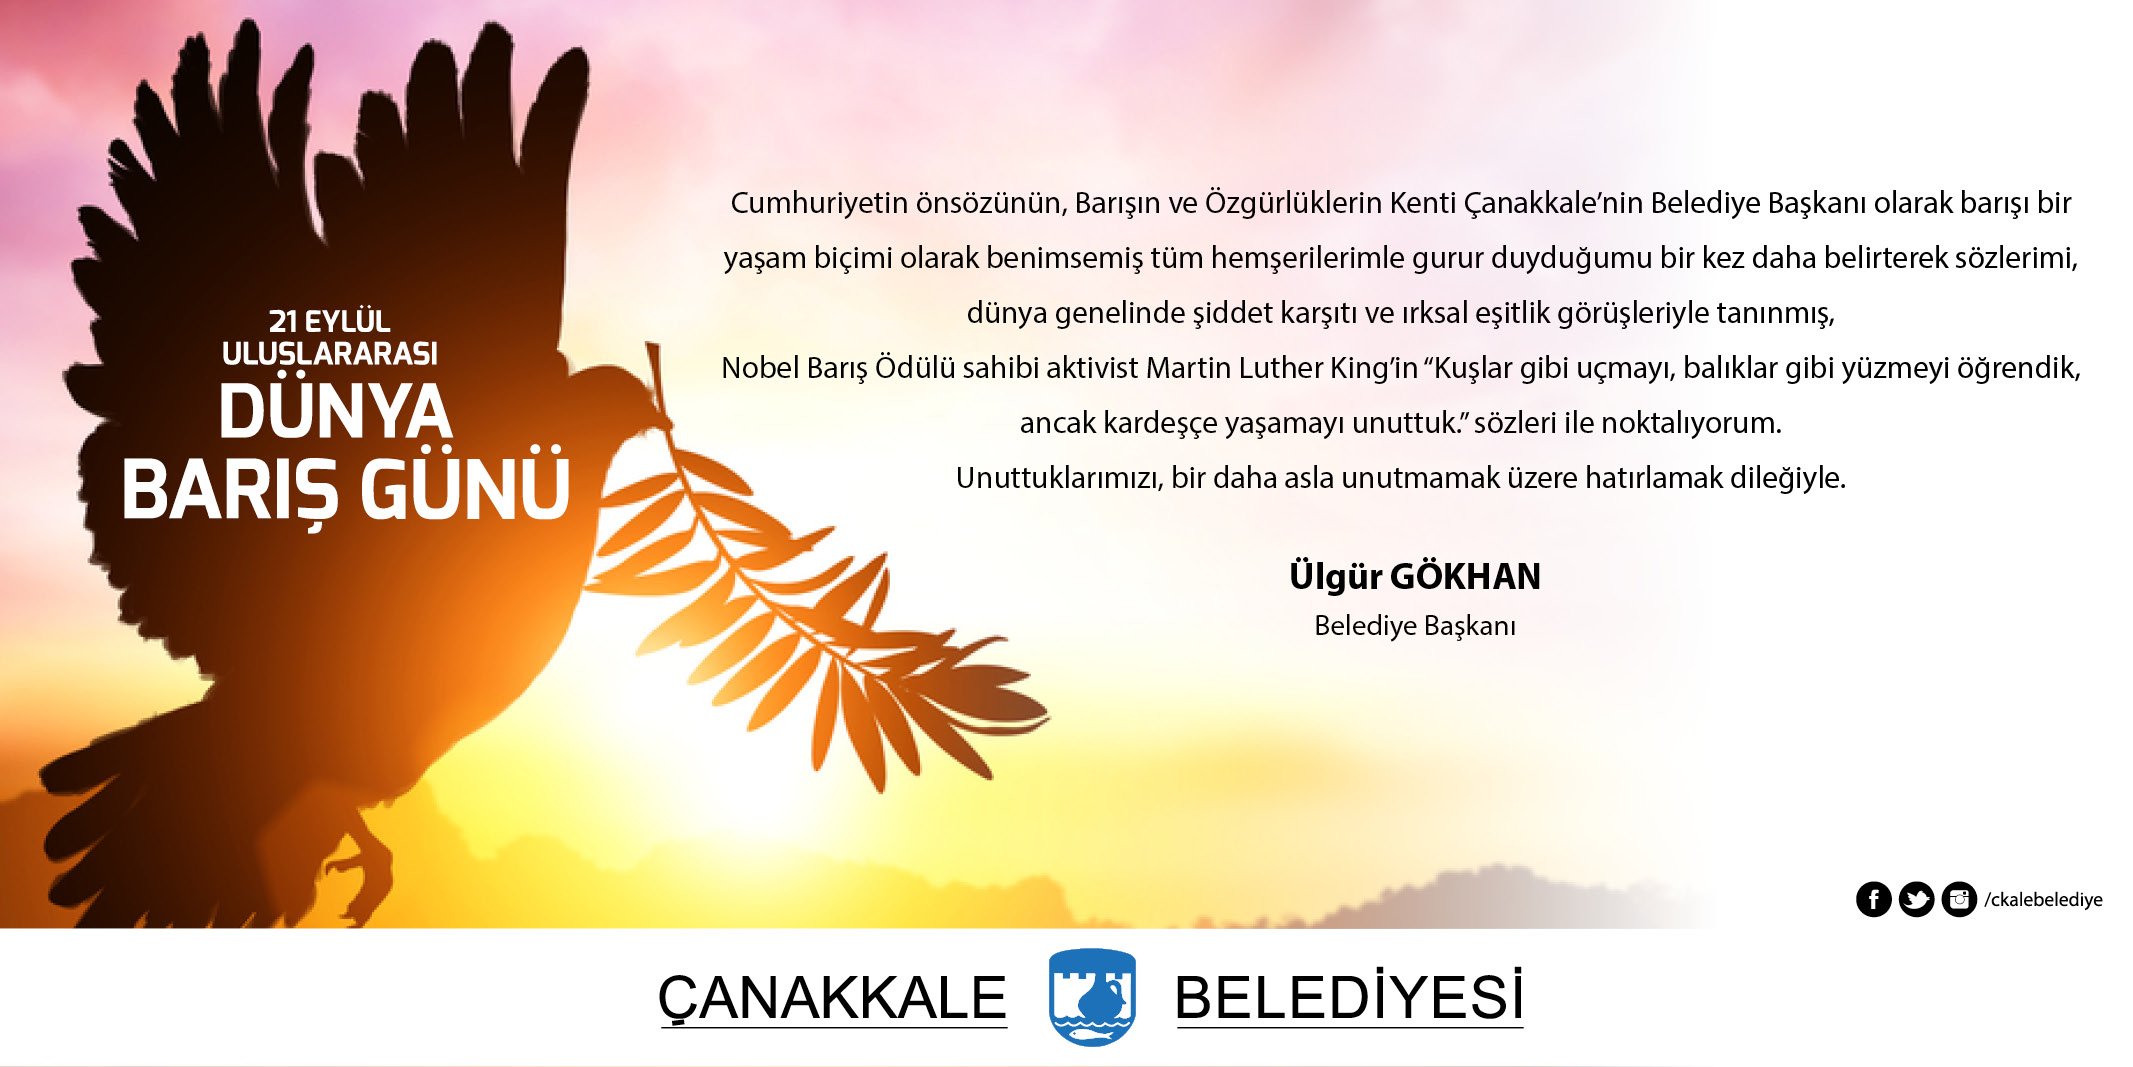 Belediye Başkanı Sayın Ülgür Gökhan'ın 21 Eylül Uluslararası Dünya Barış Günü Mesajı